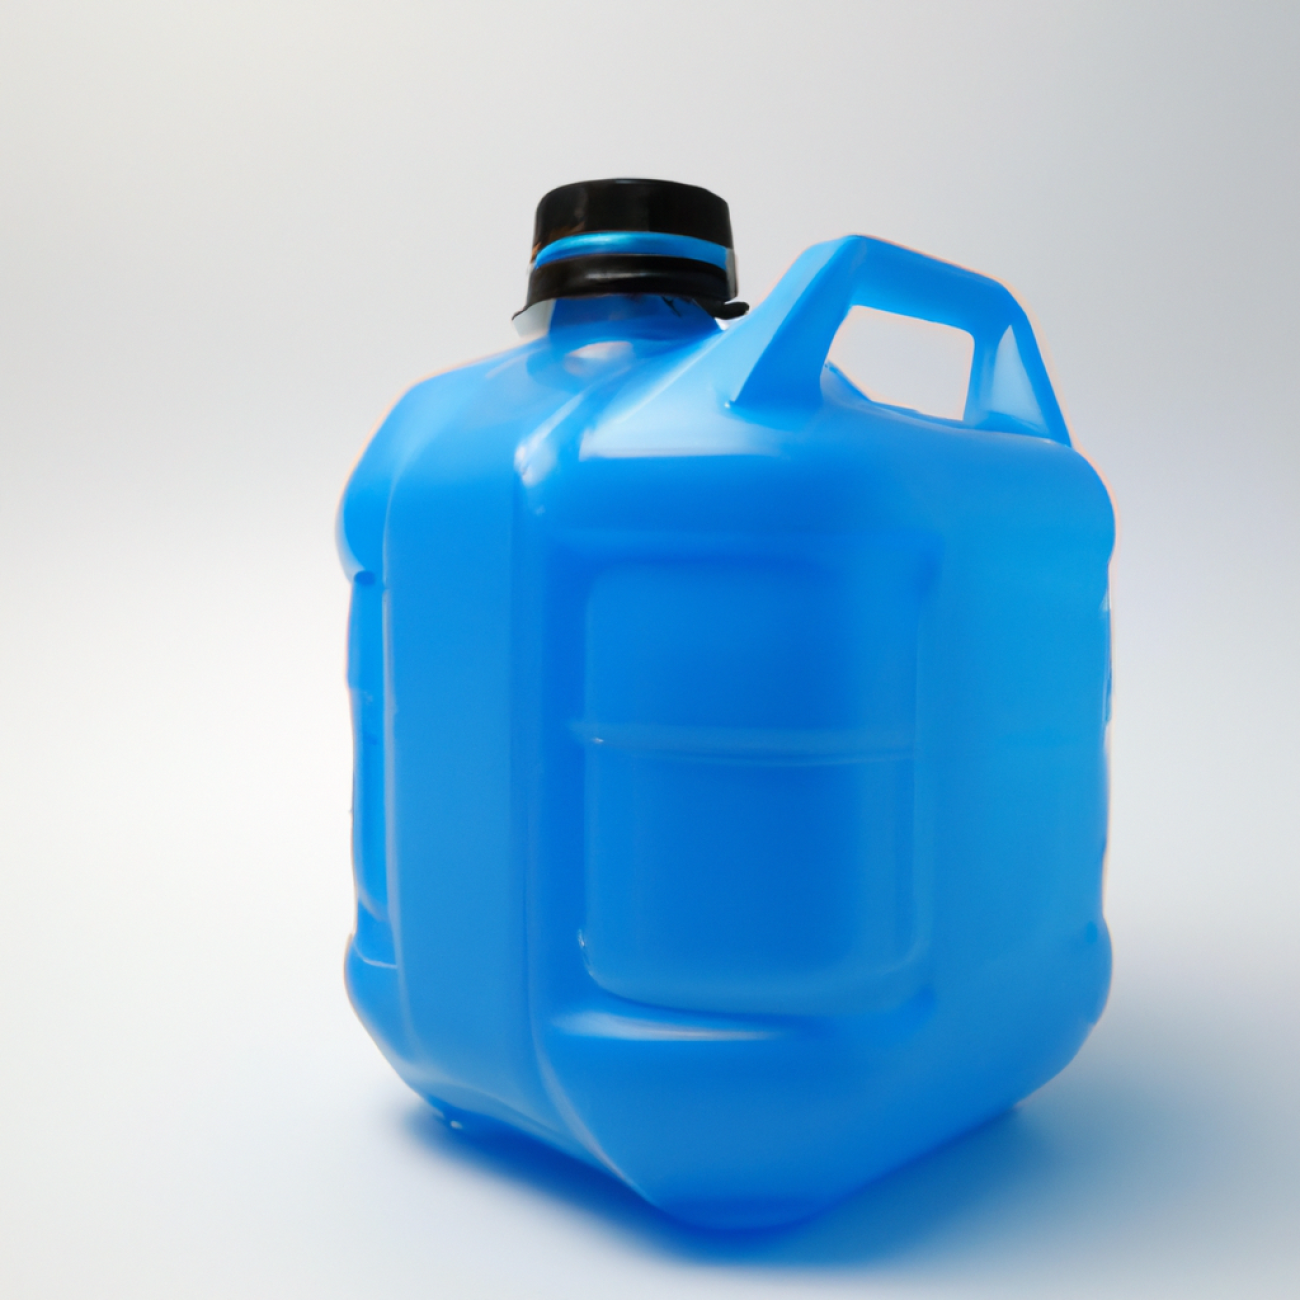 Výhody hydratace a doporučené pitné režimy